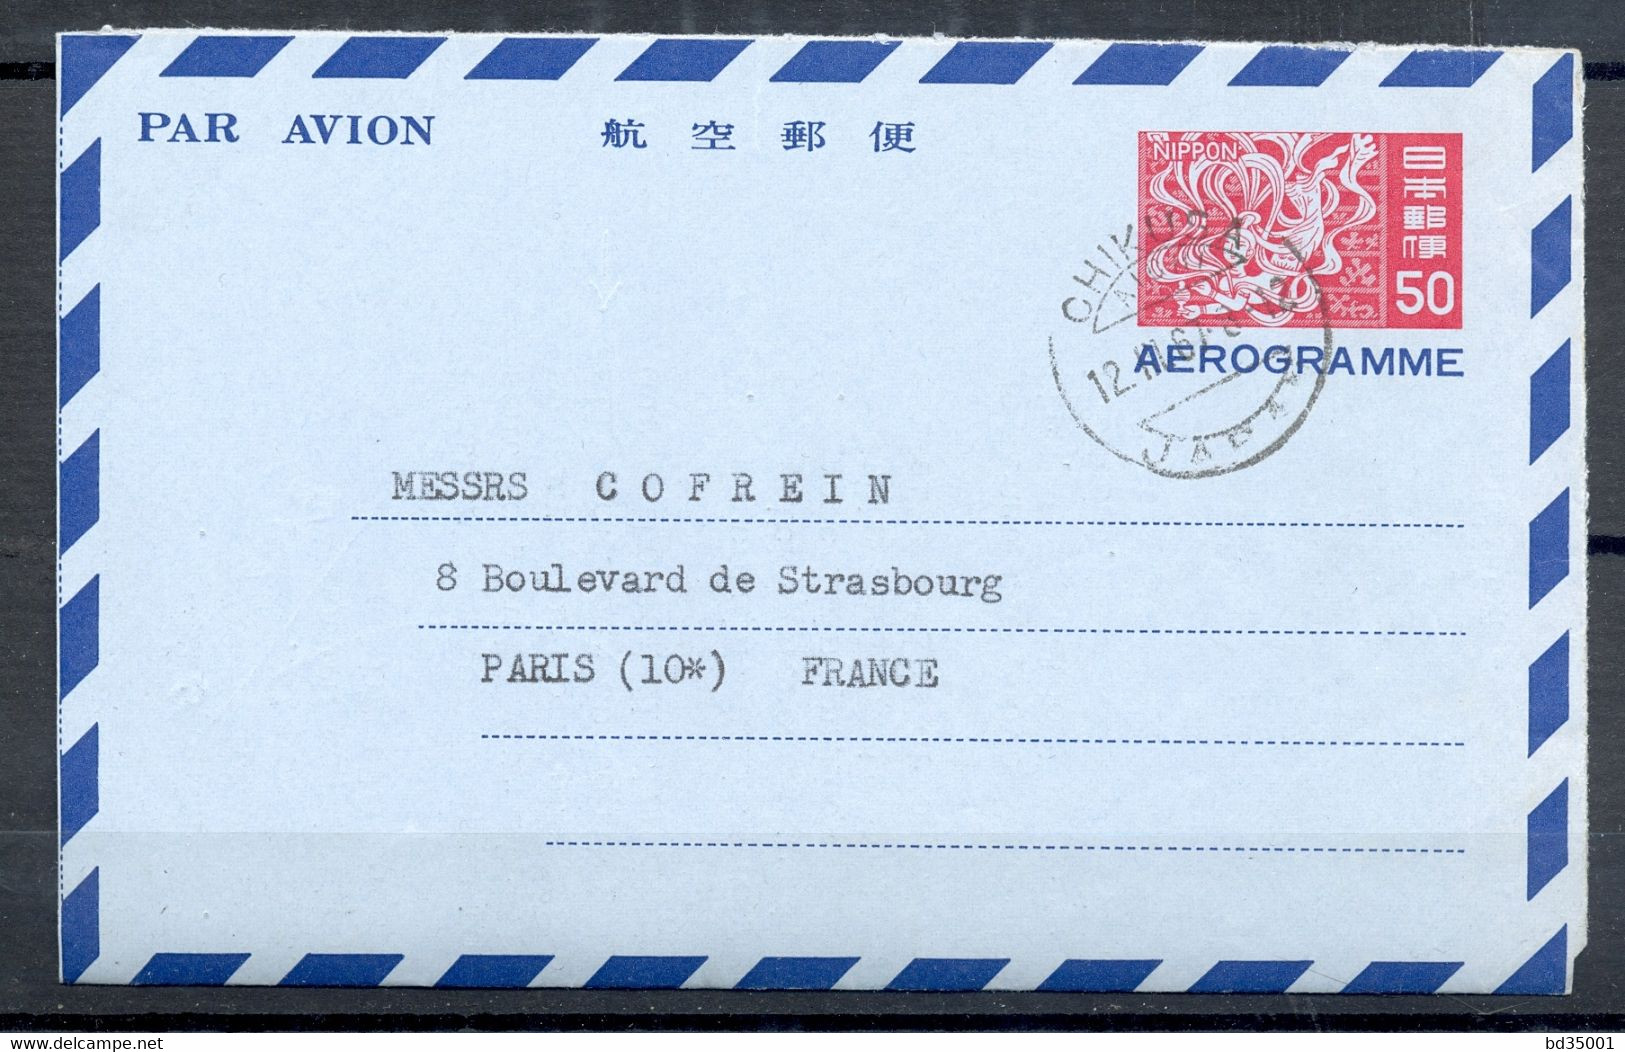 AEROGRAMME - AIR LETTER - JAPON - JAPON - 1967 - CACHET CHIKUSA - (12) - Luchtpostbladen